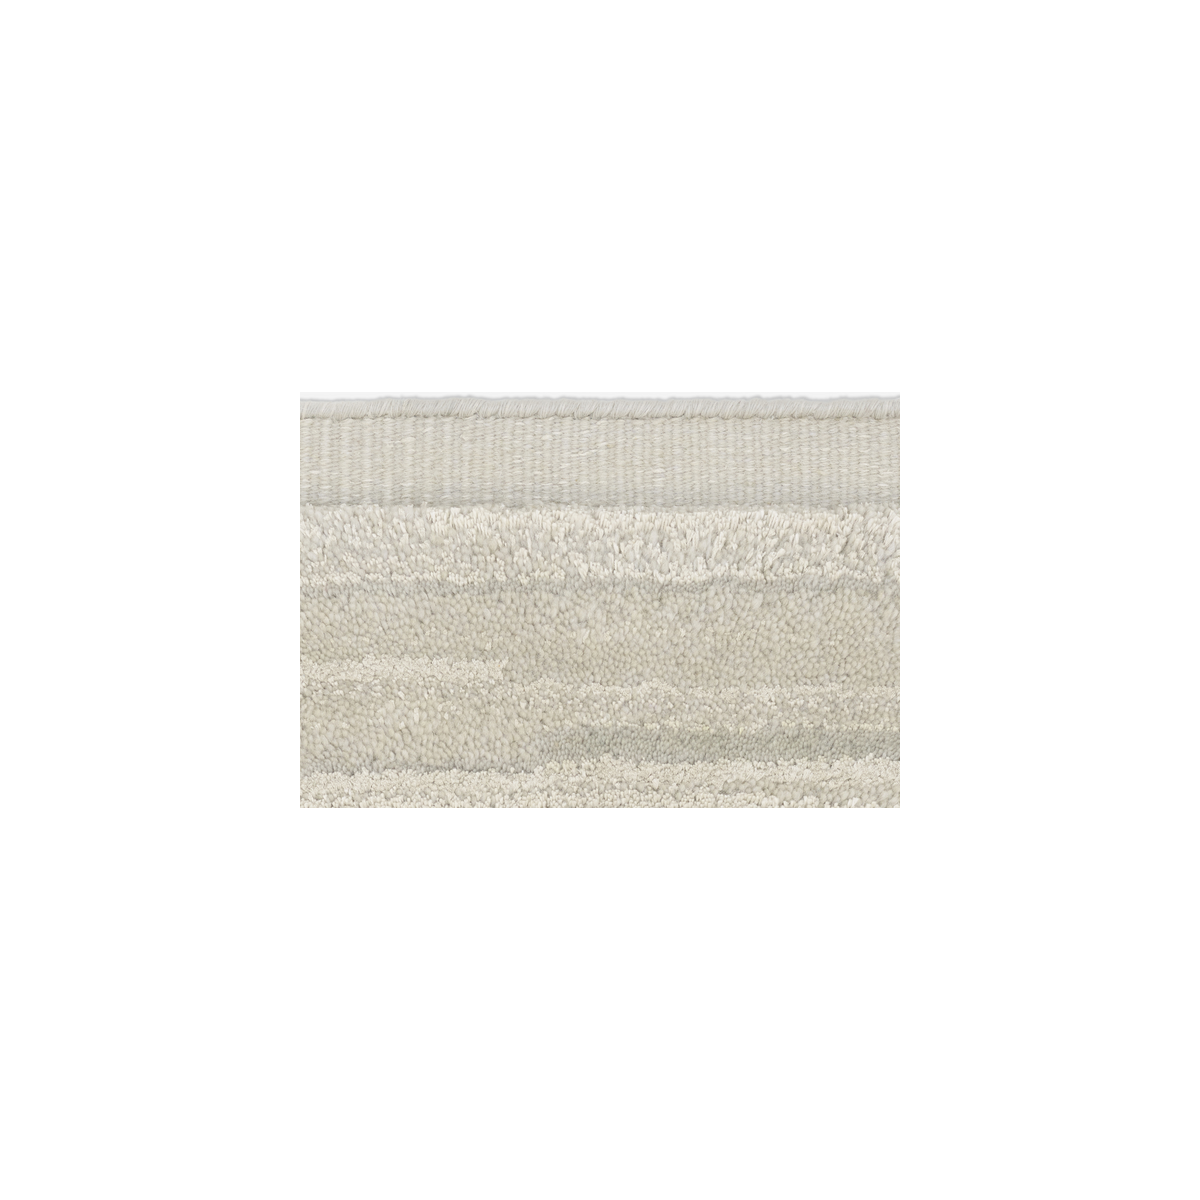 180x240cm - 0006 - Cascade rug